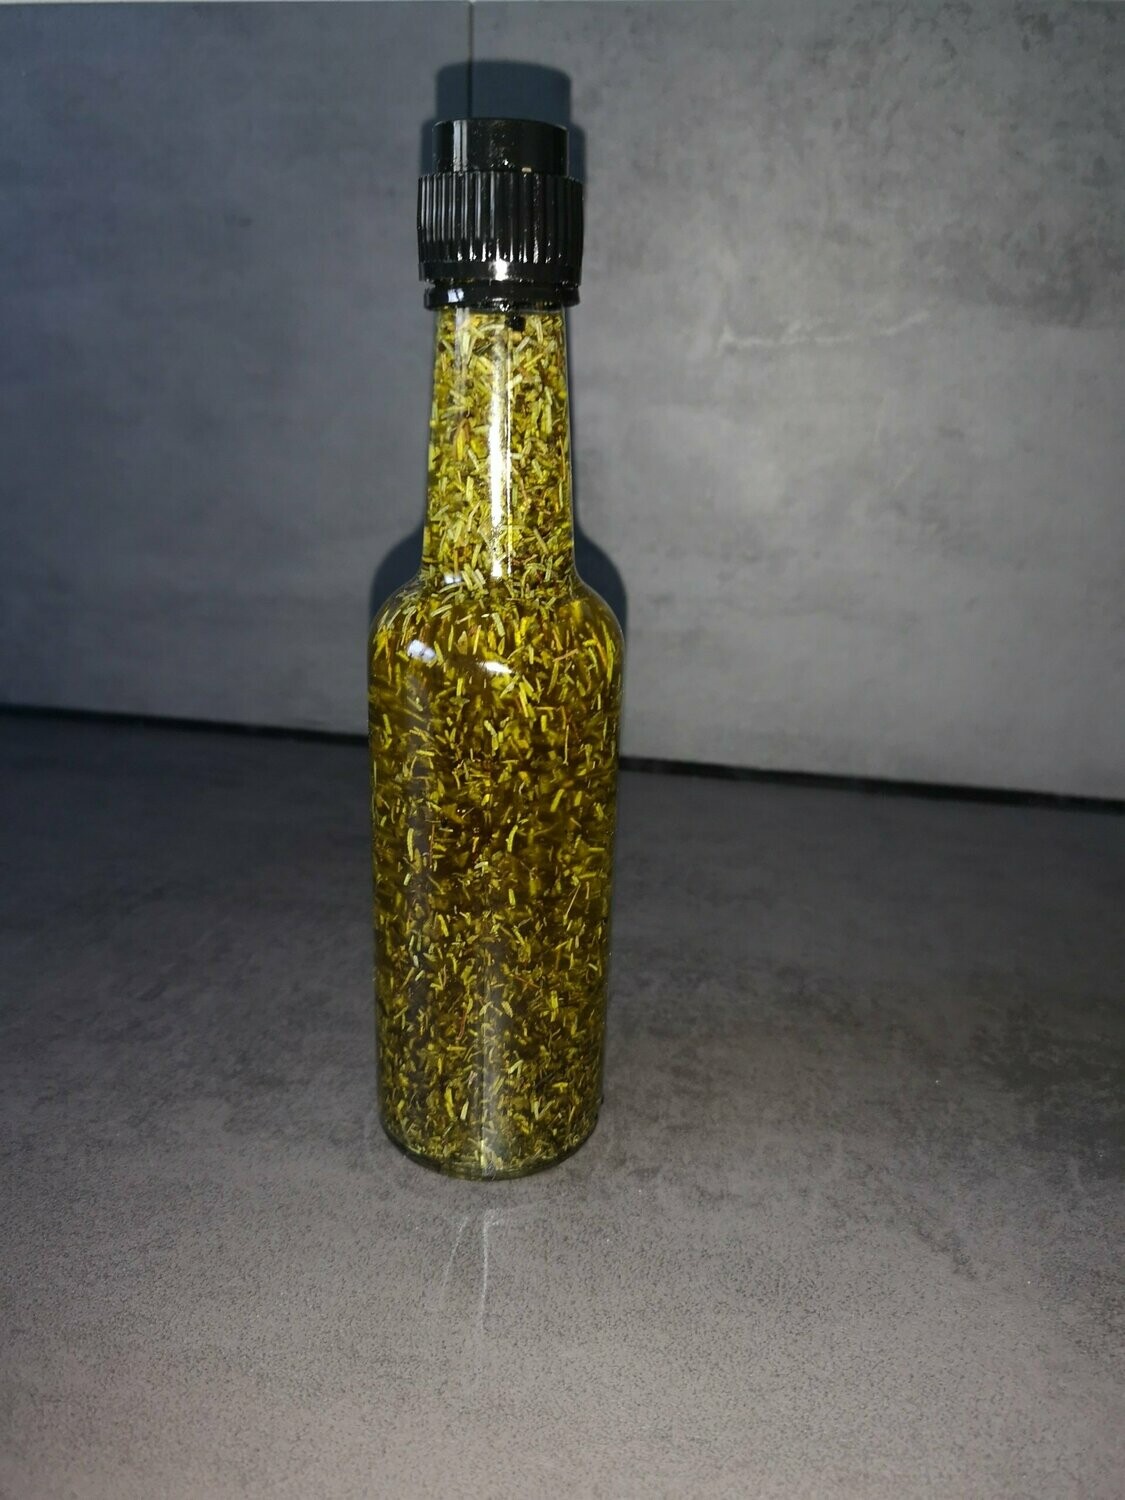 Kräuter-Öl 